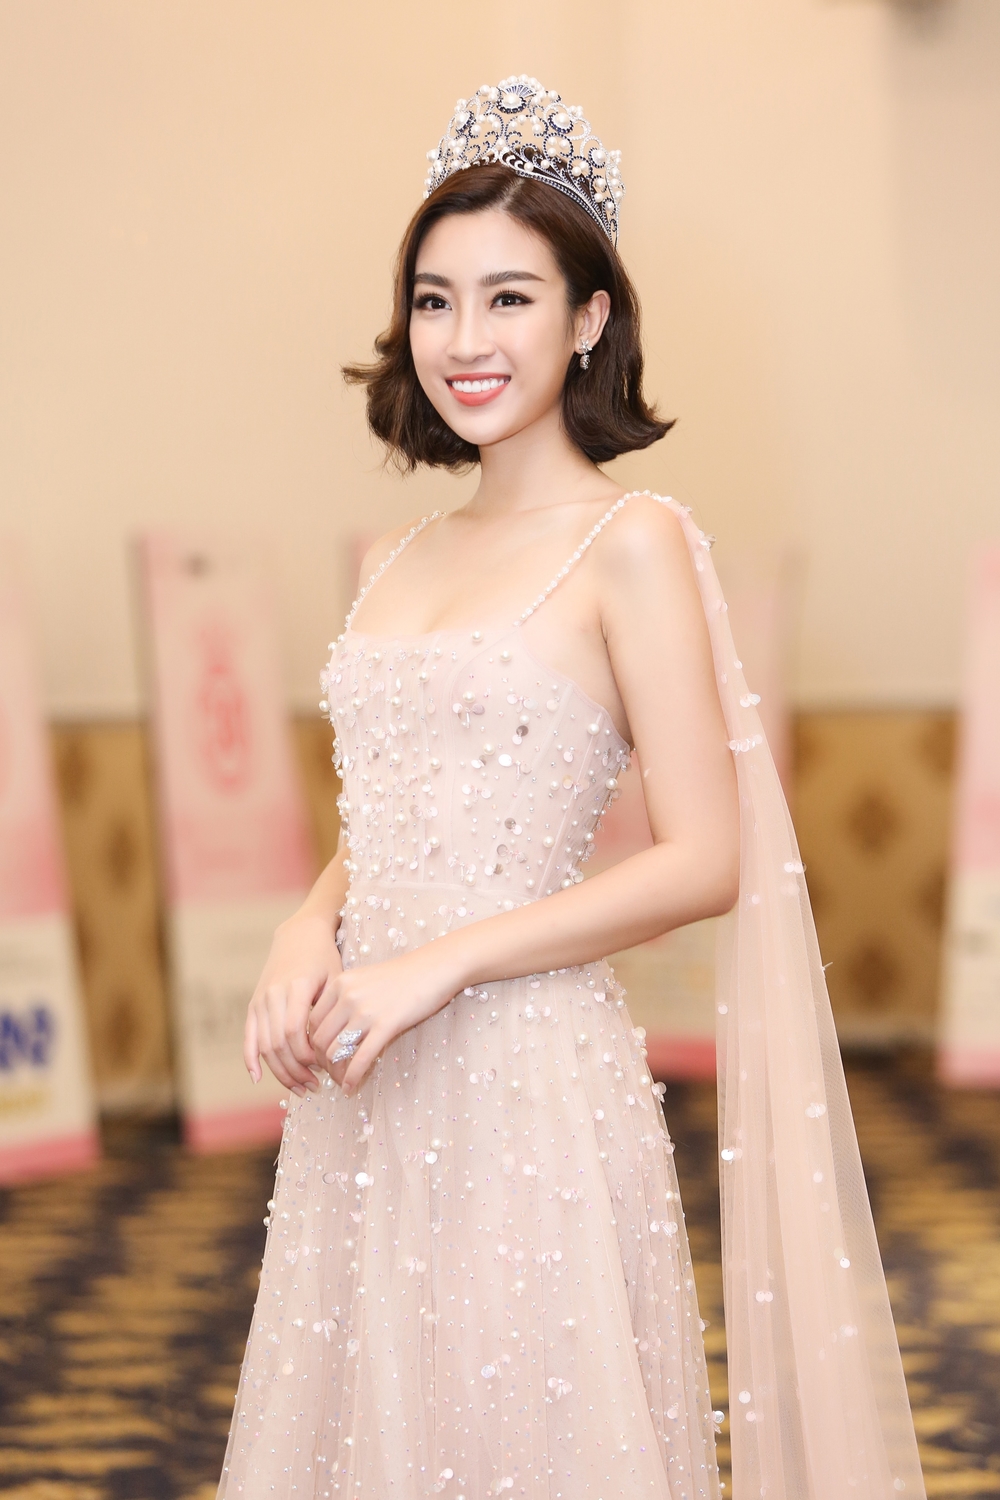 
Tại buổi họp báo Hoa hậu Đỗ Mỹ Linh cho biết cô vô cùng bồi hồi và xúc động khi chỉ còn hơn 10 ngày nữa sẽ kết thúc nhiệm kì 2 năm đương nhiệm Hoa hậu Việt Nam.